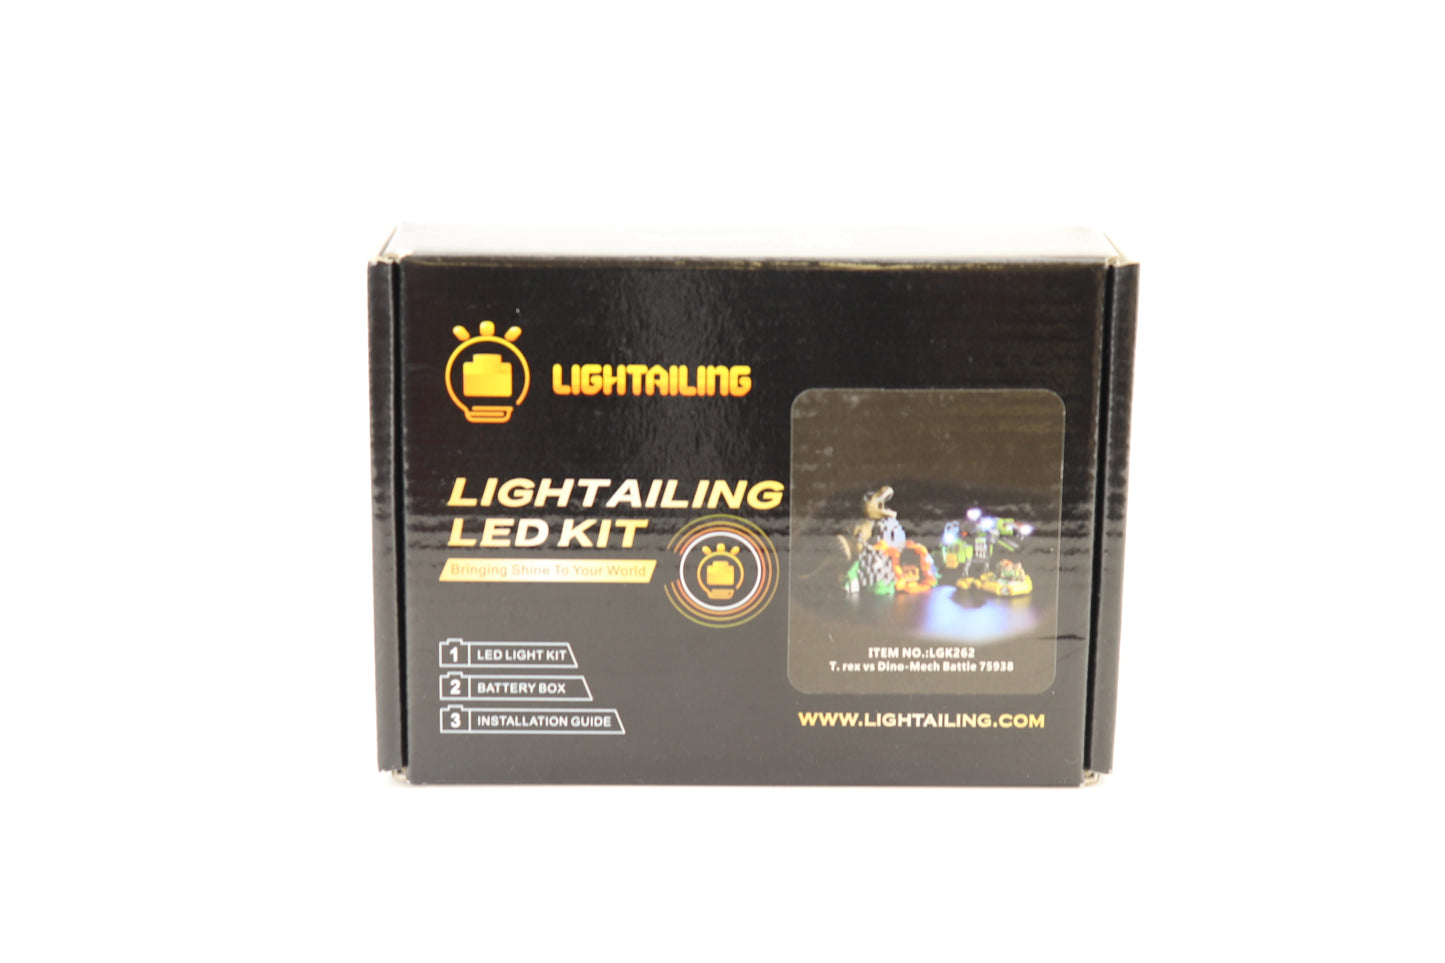 Lighttailing 75938 Light Kit for T-Rex vs. Dino-Mech Battle - Open Box